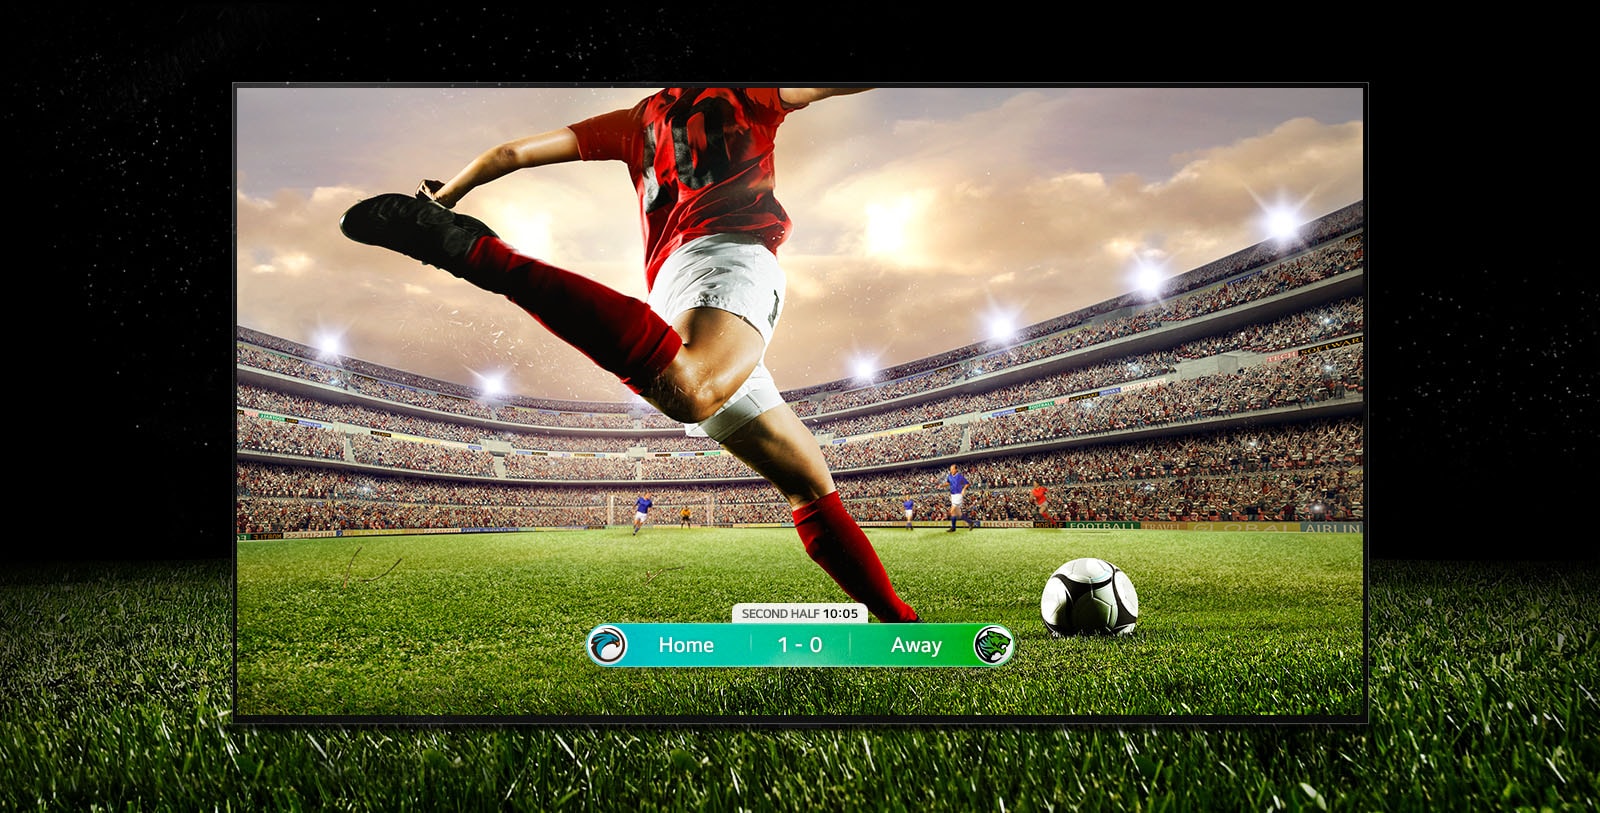 Kırmızı şeritli bir oyuncunun stadyumda topa vurmak üzere olduğu bir futbol maçını gösteren ekranın görüntüsü. Oyun skoru ekranın alt kısmında görünür. Sahadaki yeşil çimen, ekranın ötesinde siyah zemine kadar uzanır.